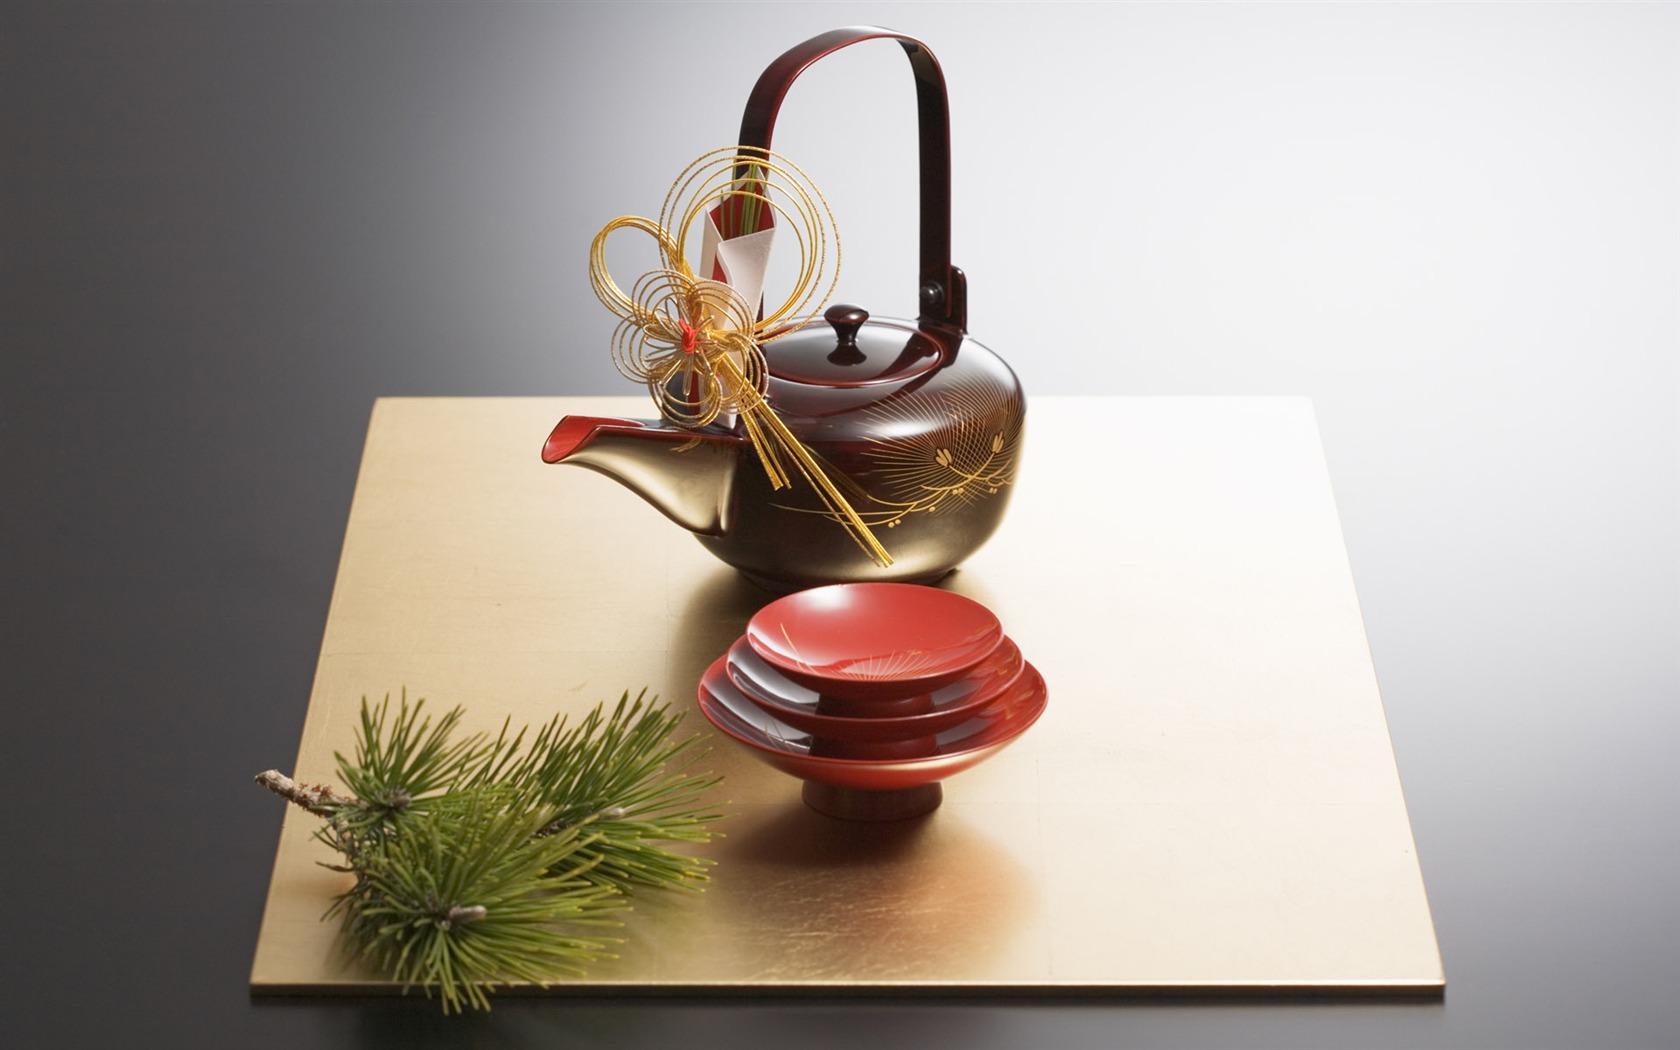 Fondos de año nuevo japonés Cultura (2) #6 - 1680x1050